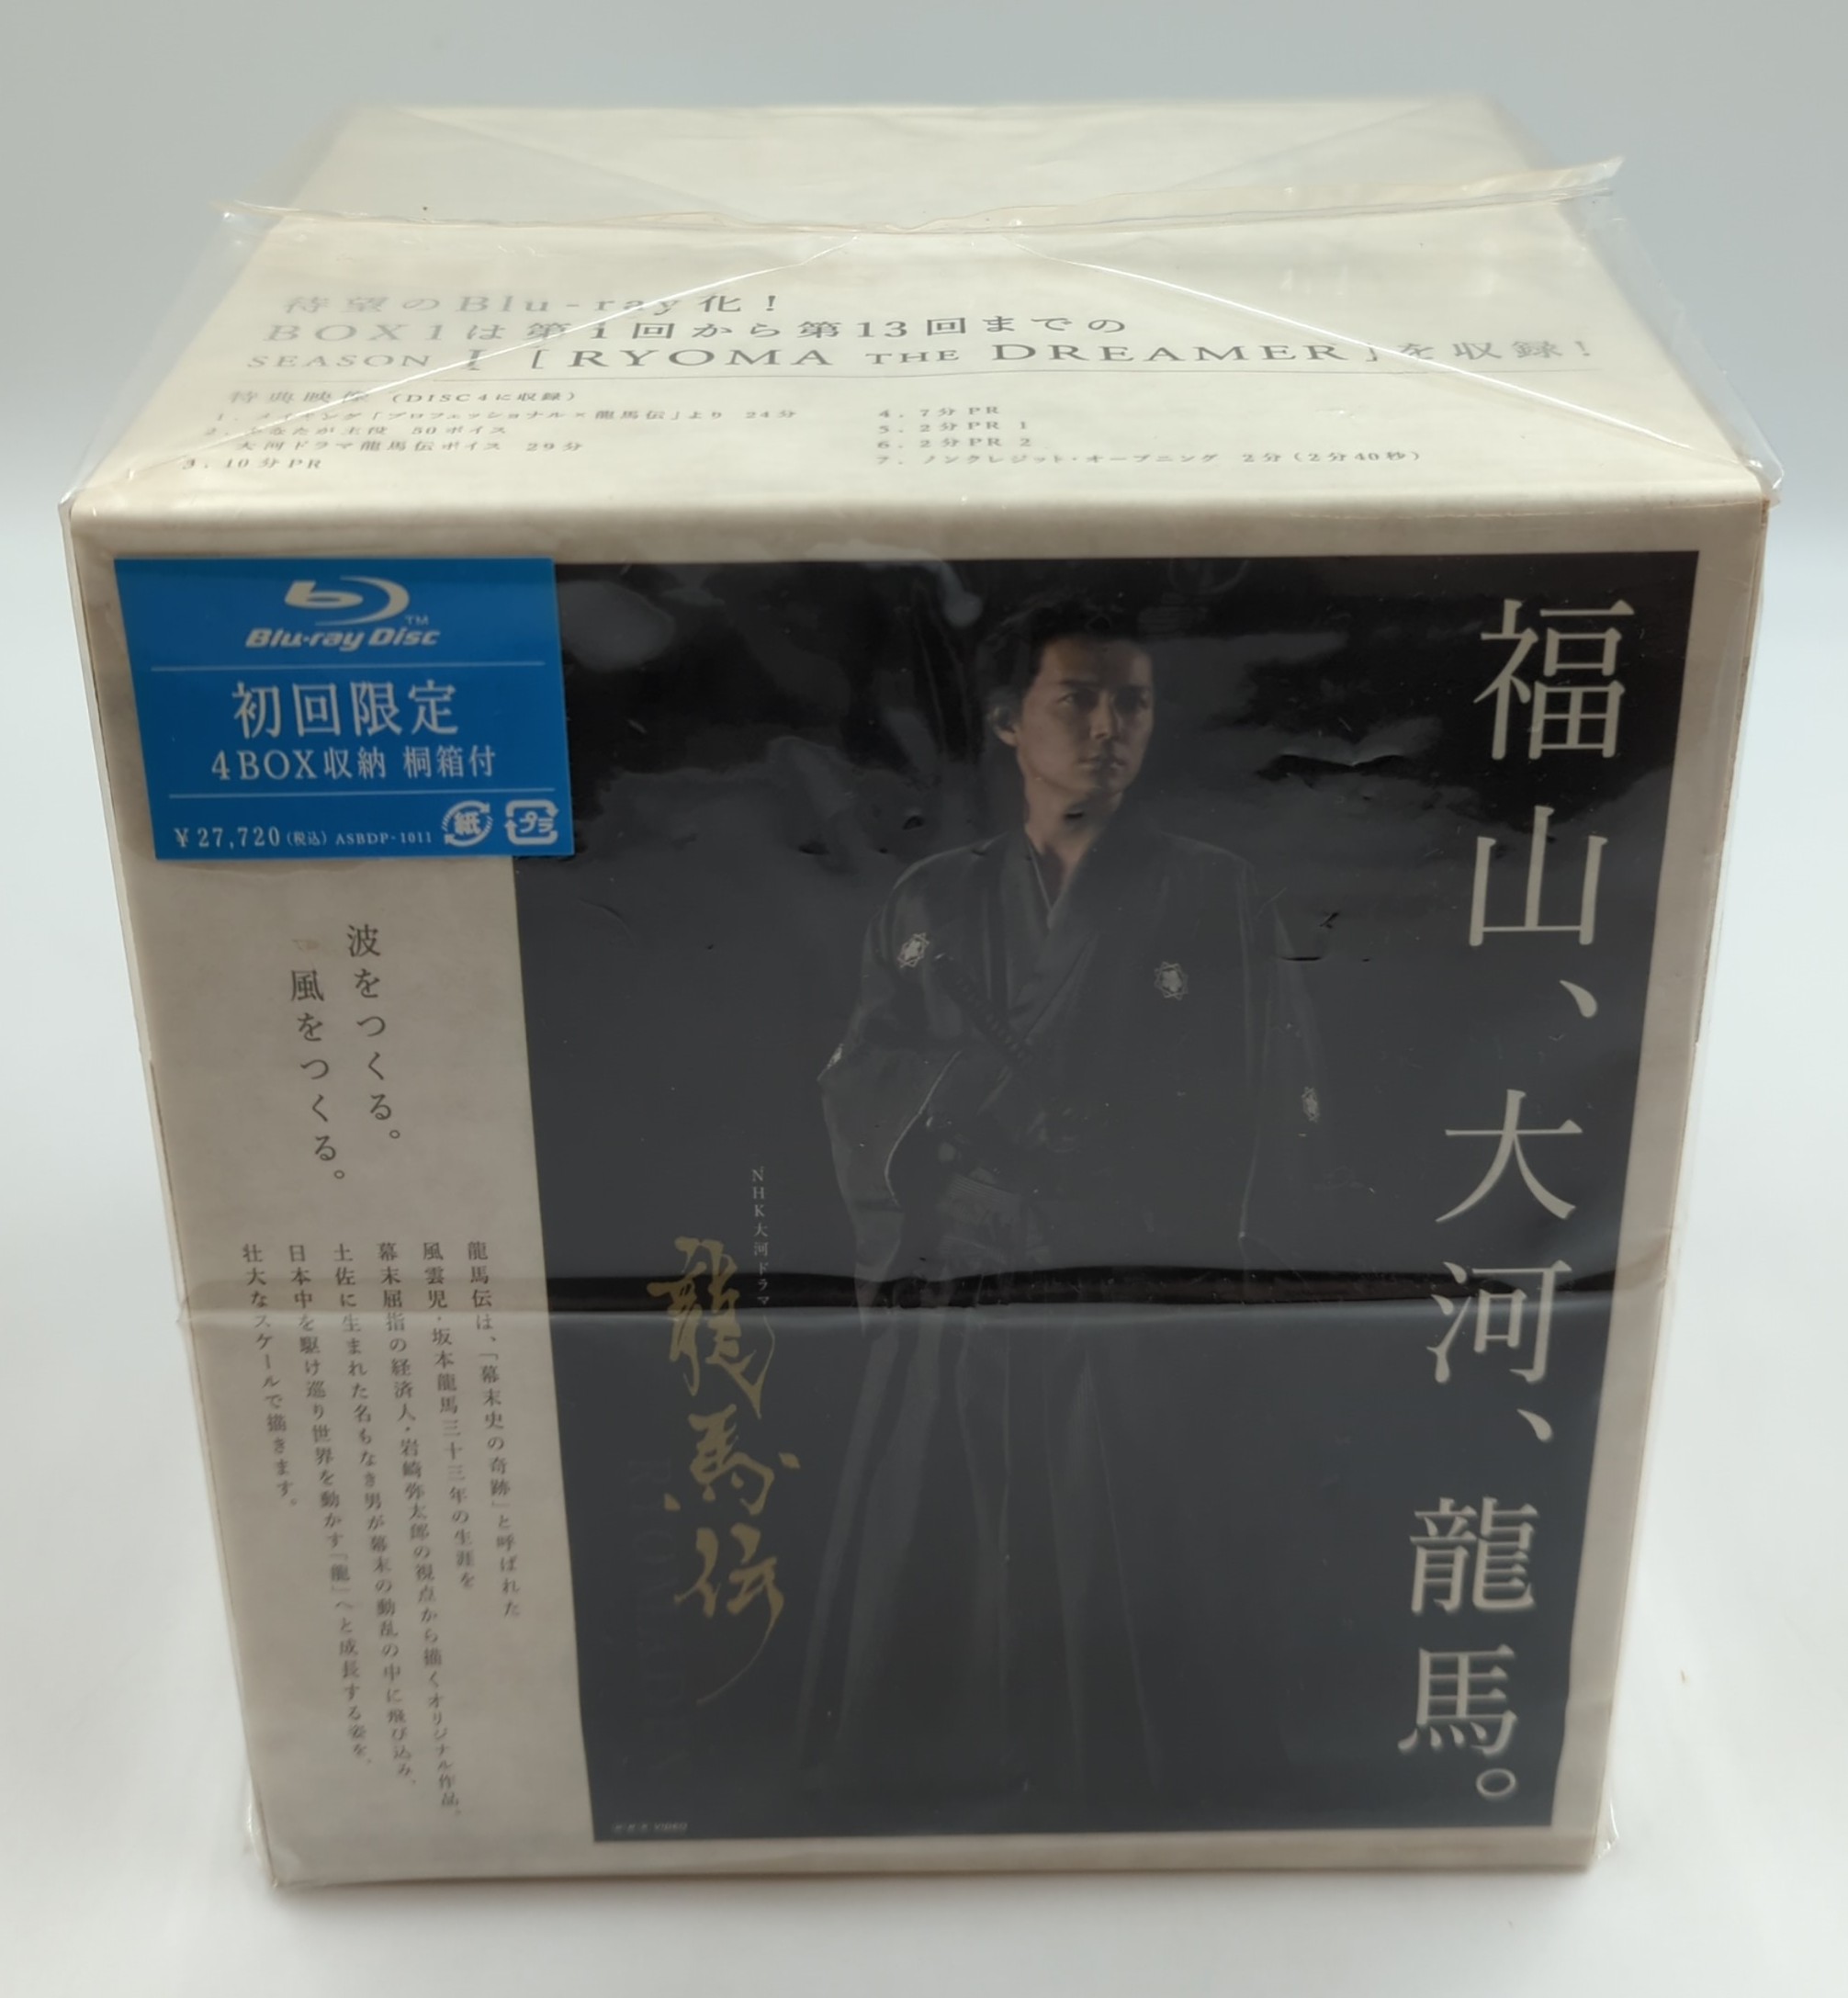 龍馬伝 完全版【DVD BOX】全4巻セット - TVドラマ